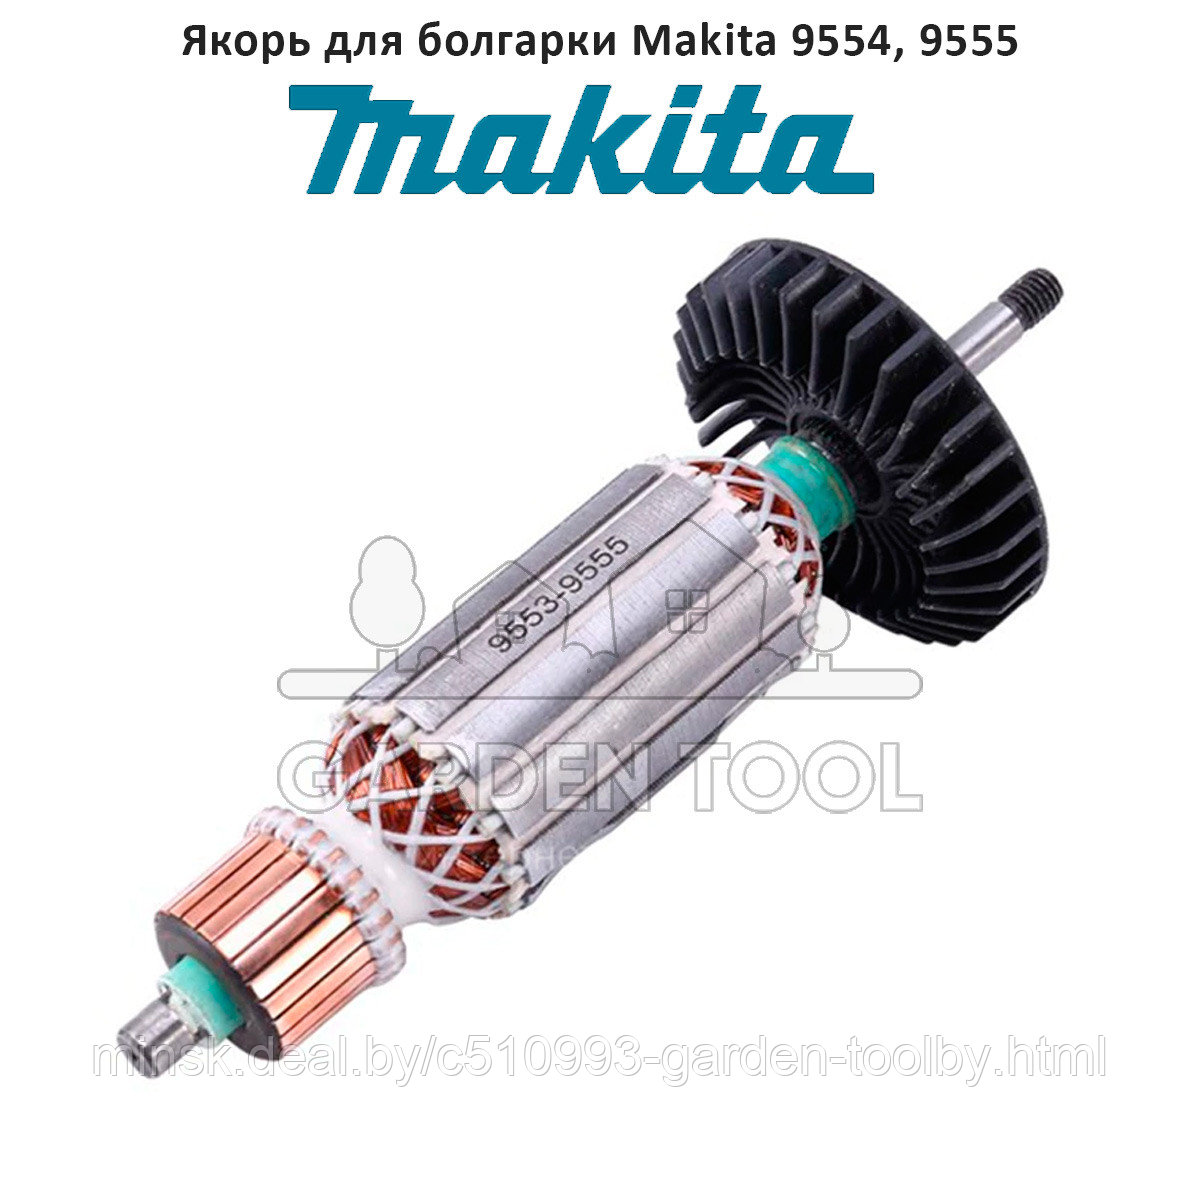 Ротор (якорь) на болгарку (УШМ) Makita 9554 HN, 9555 HN, 9555 NB (515619-7)